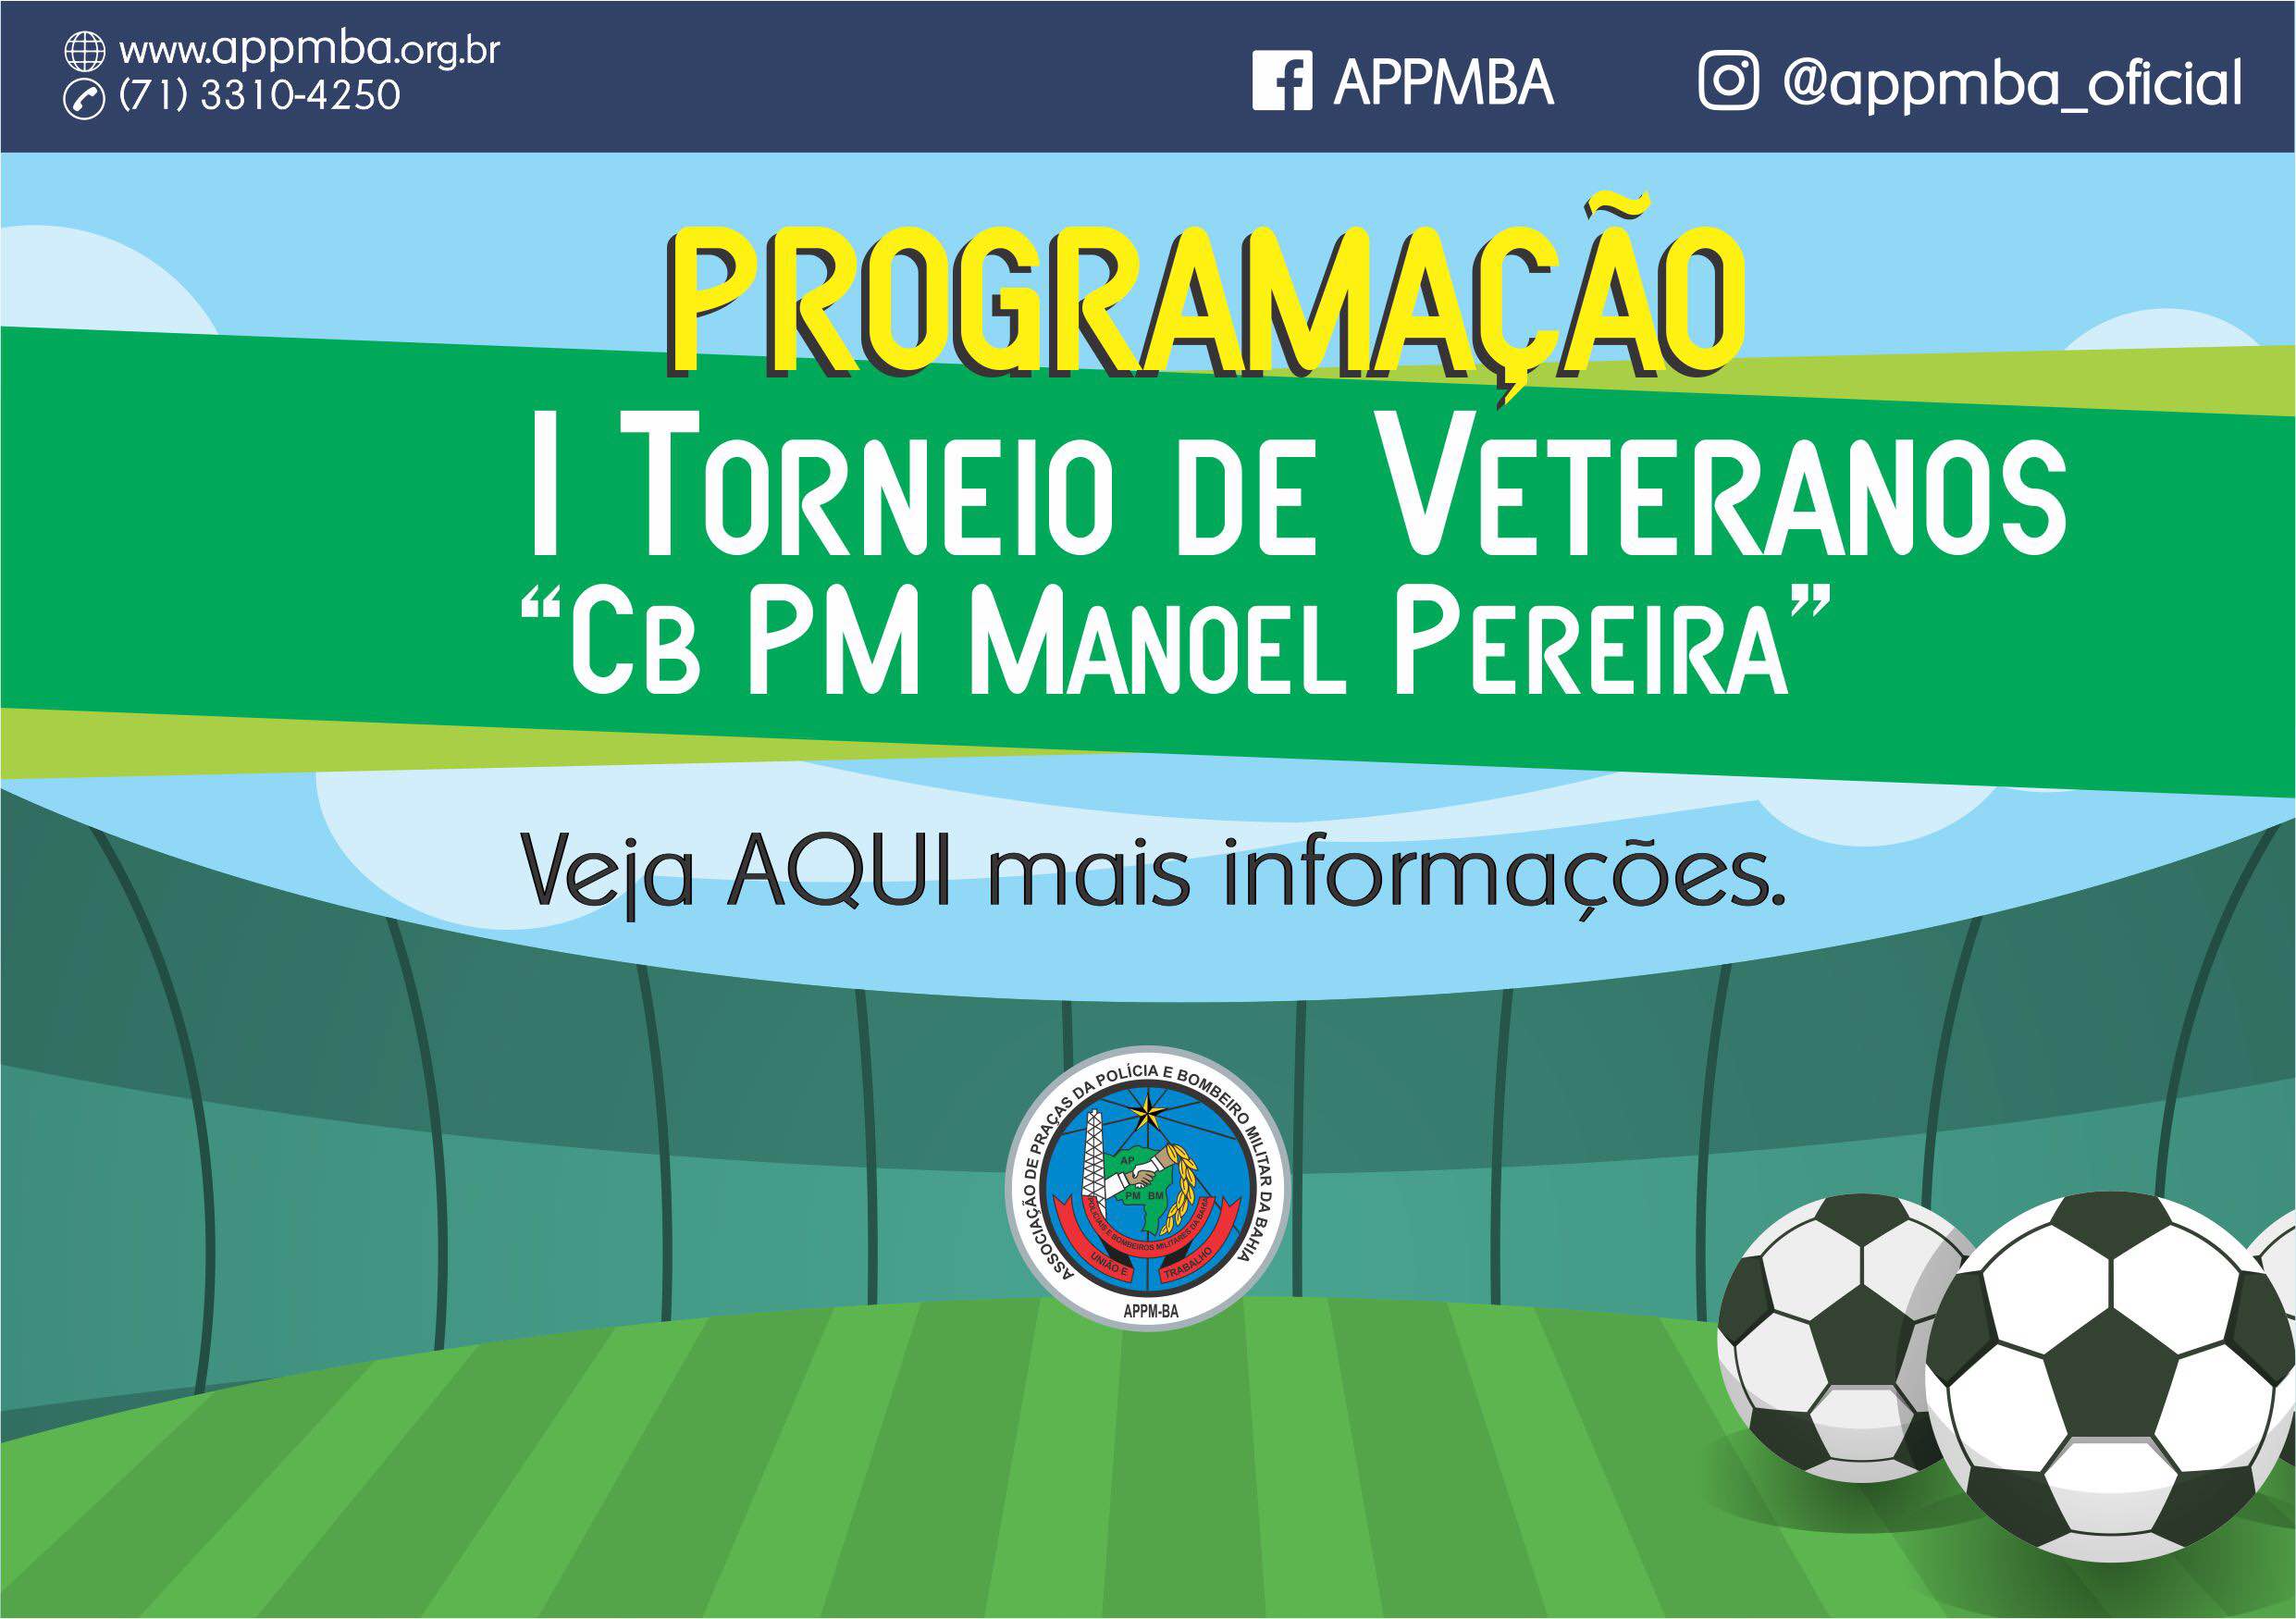 Programação I Torneio de Veteranos Cb PM Manoel Pereira, dias 4 e 5/5